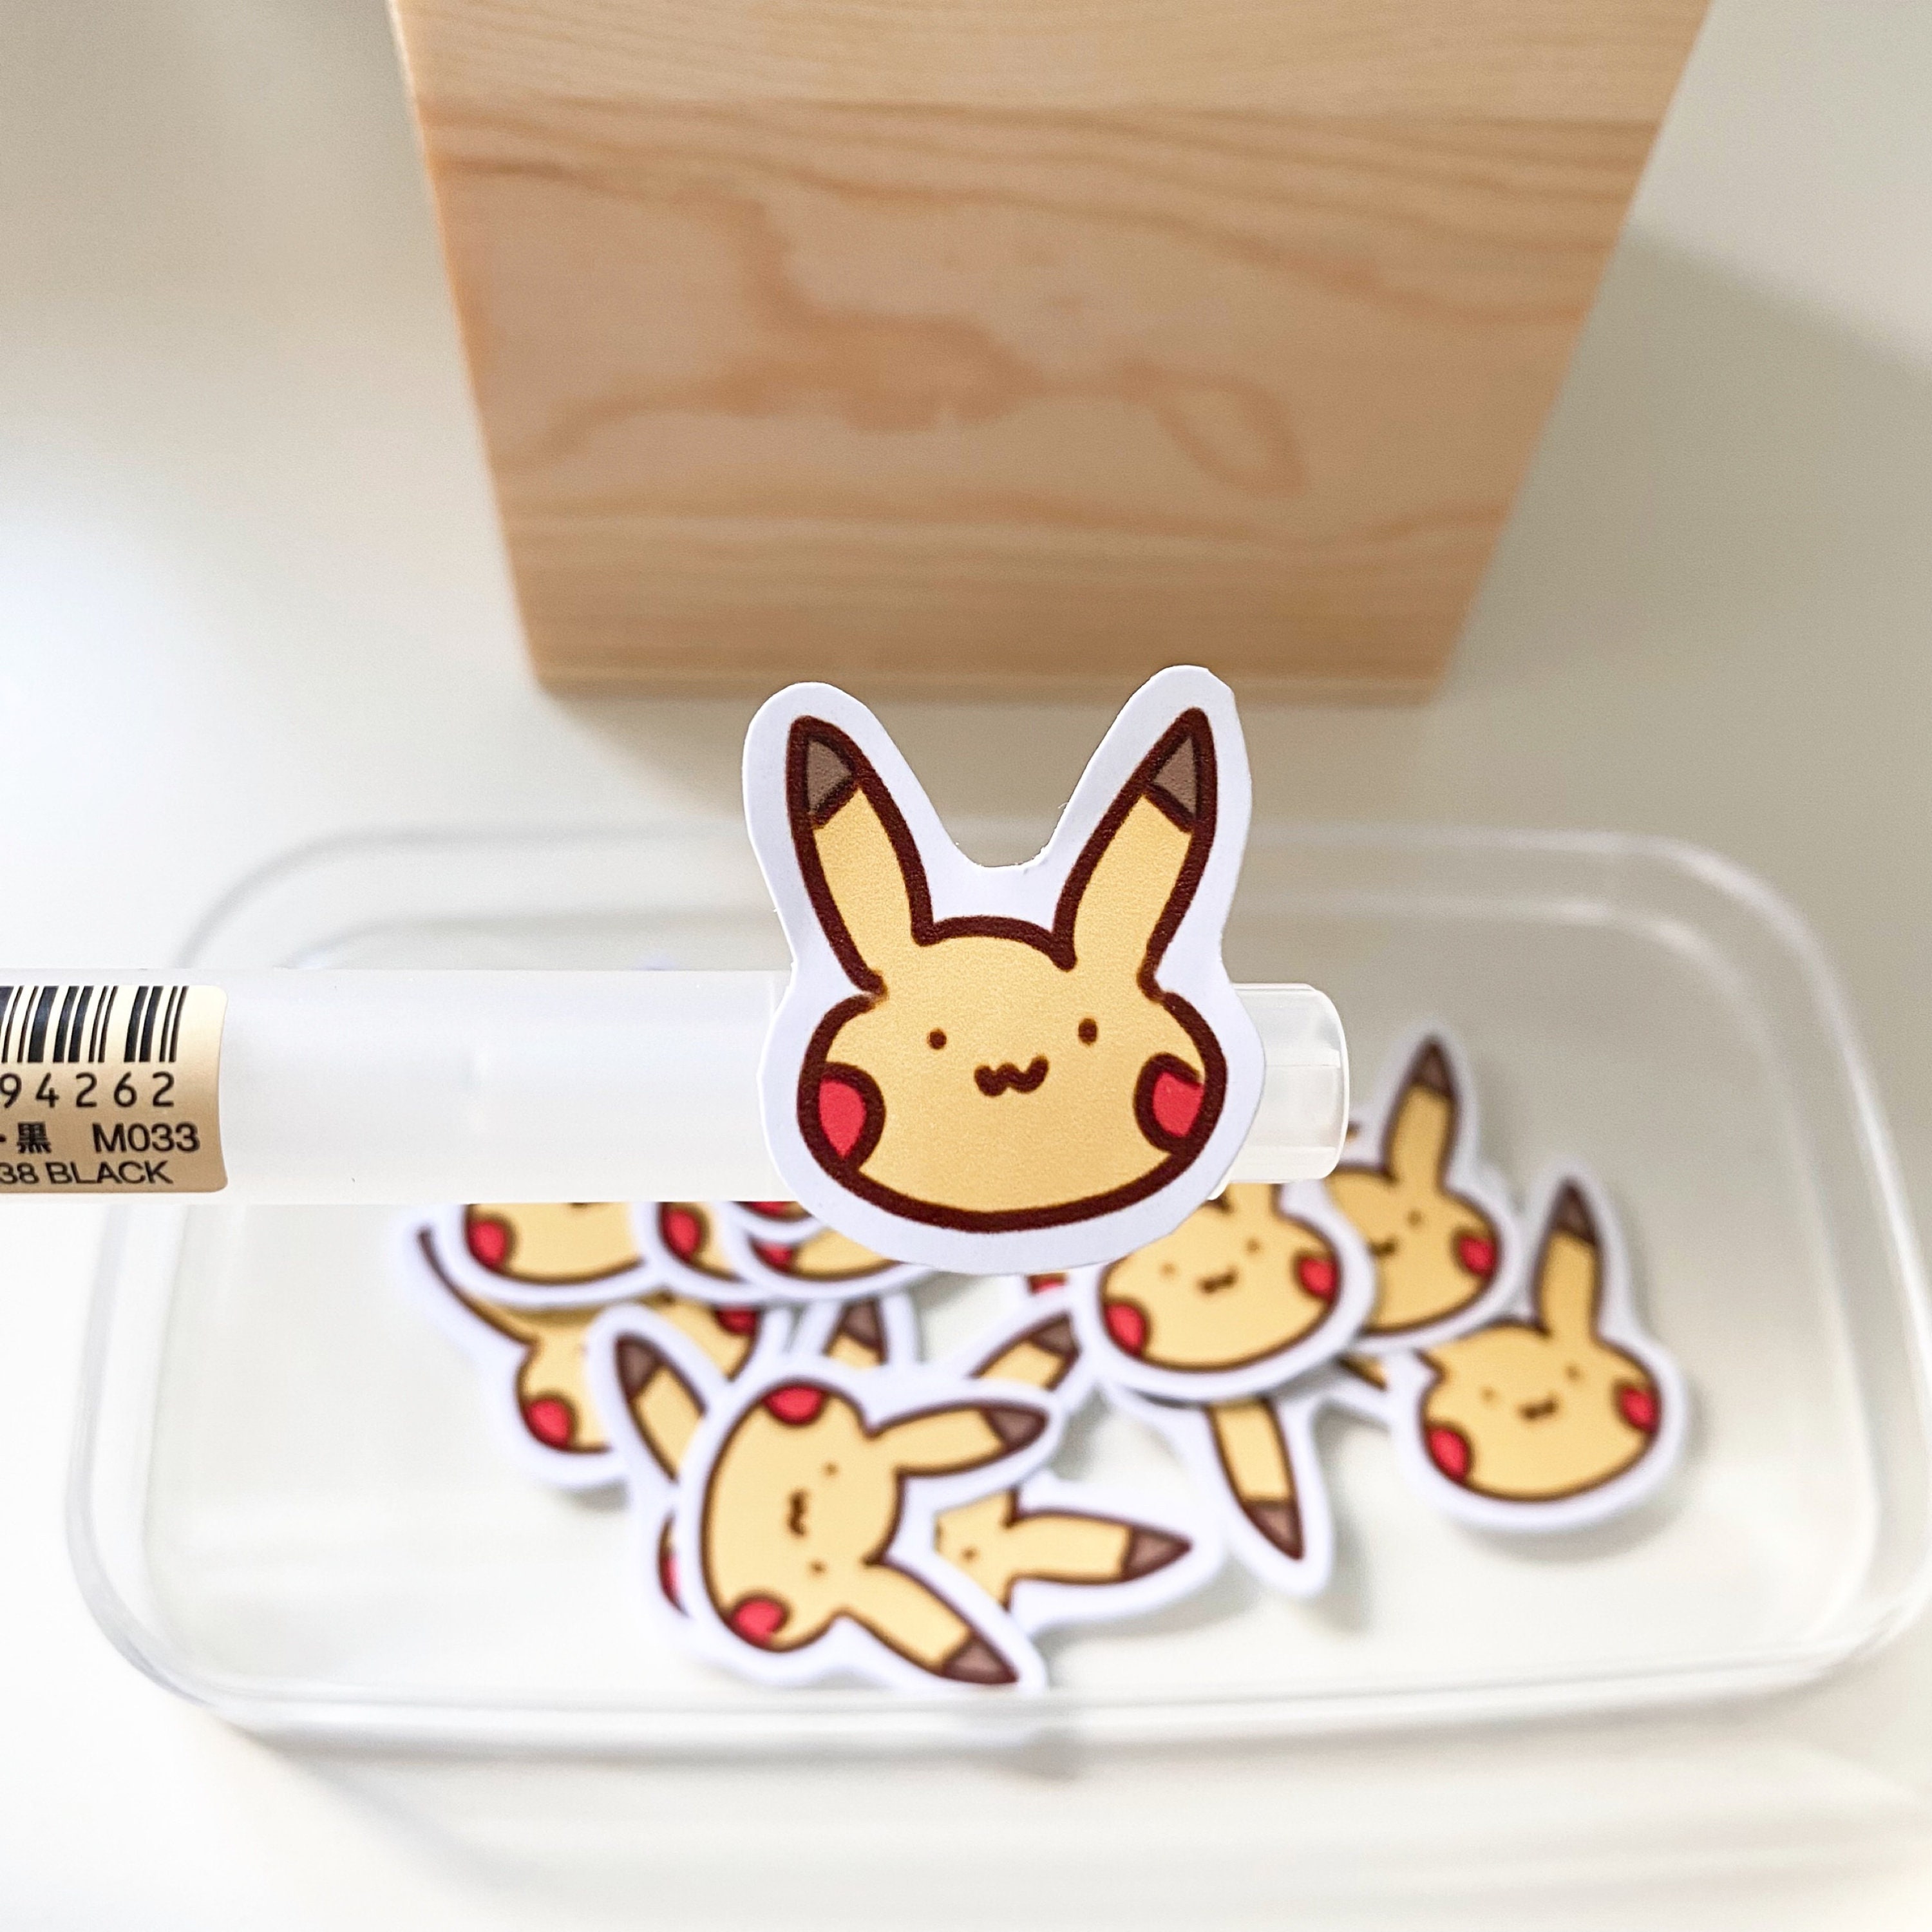 Adesivi Pokemon My Collect Mini adesivo Pikachu dal Giappone -  Italia